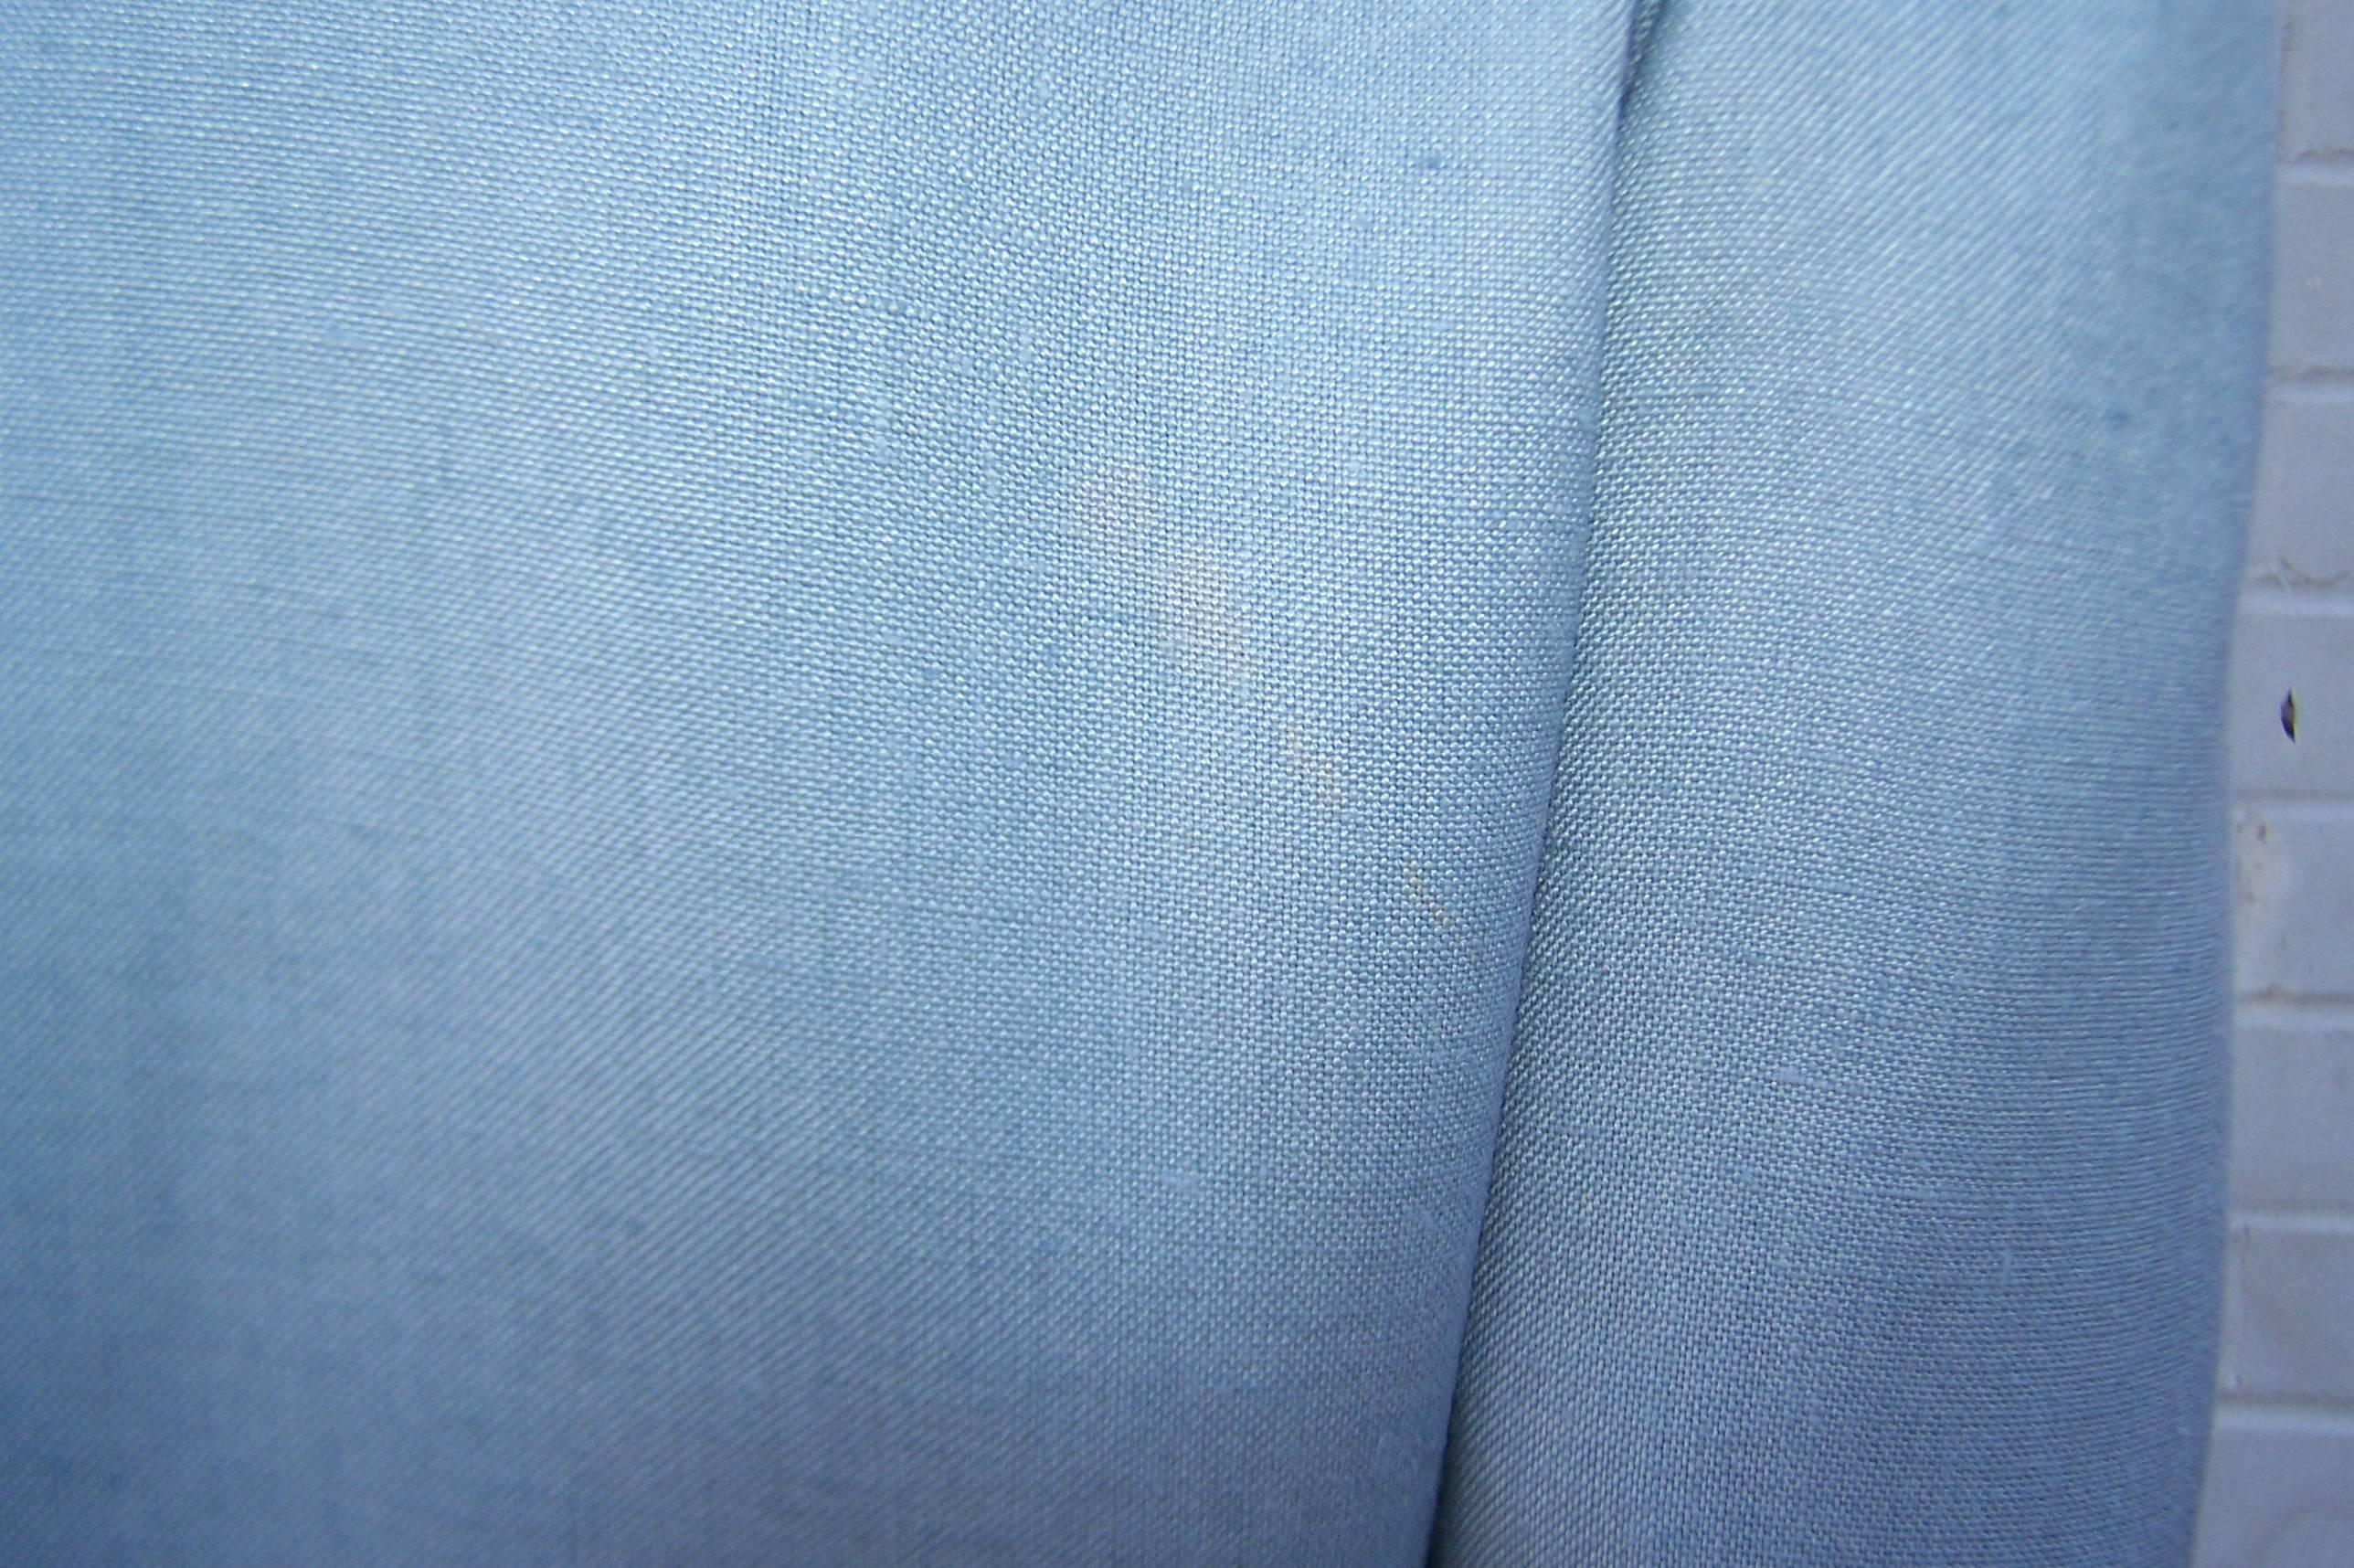 C.1980 Oscar de la Renta Baby Blue Linen Skirt Suit With Pastel Embroidery 4